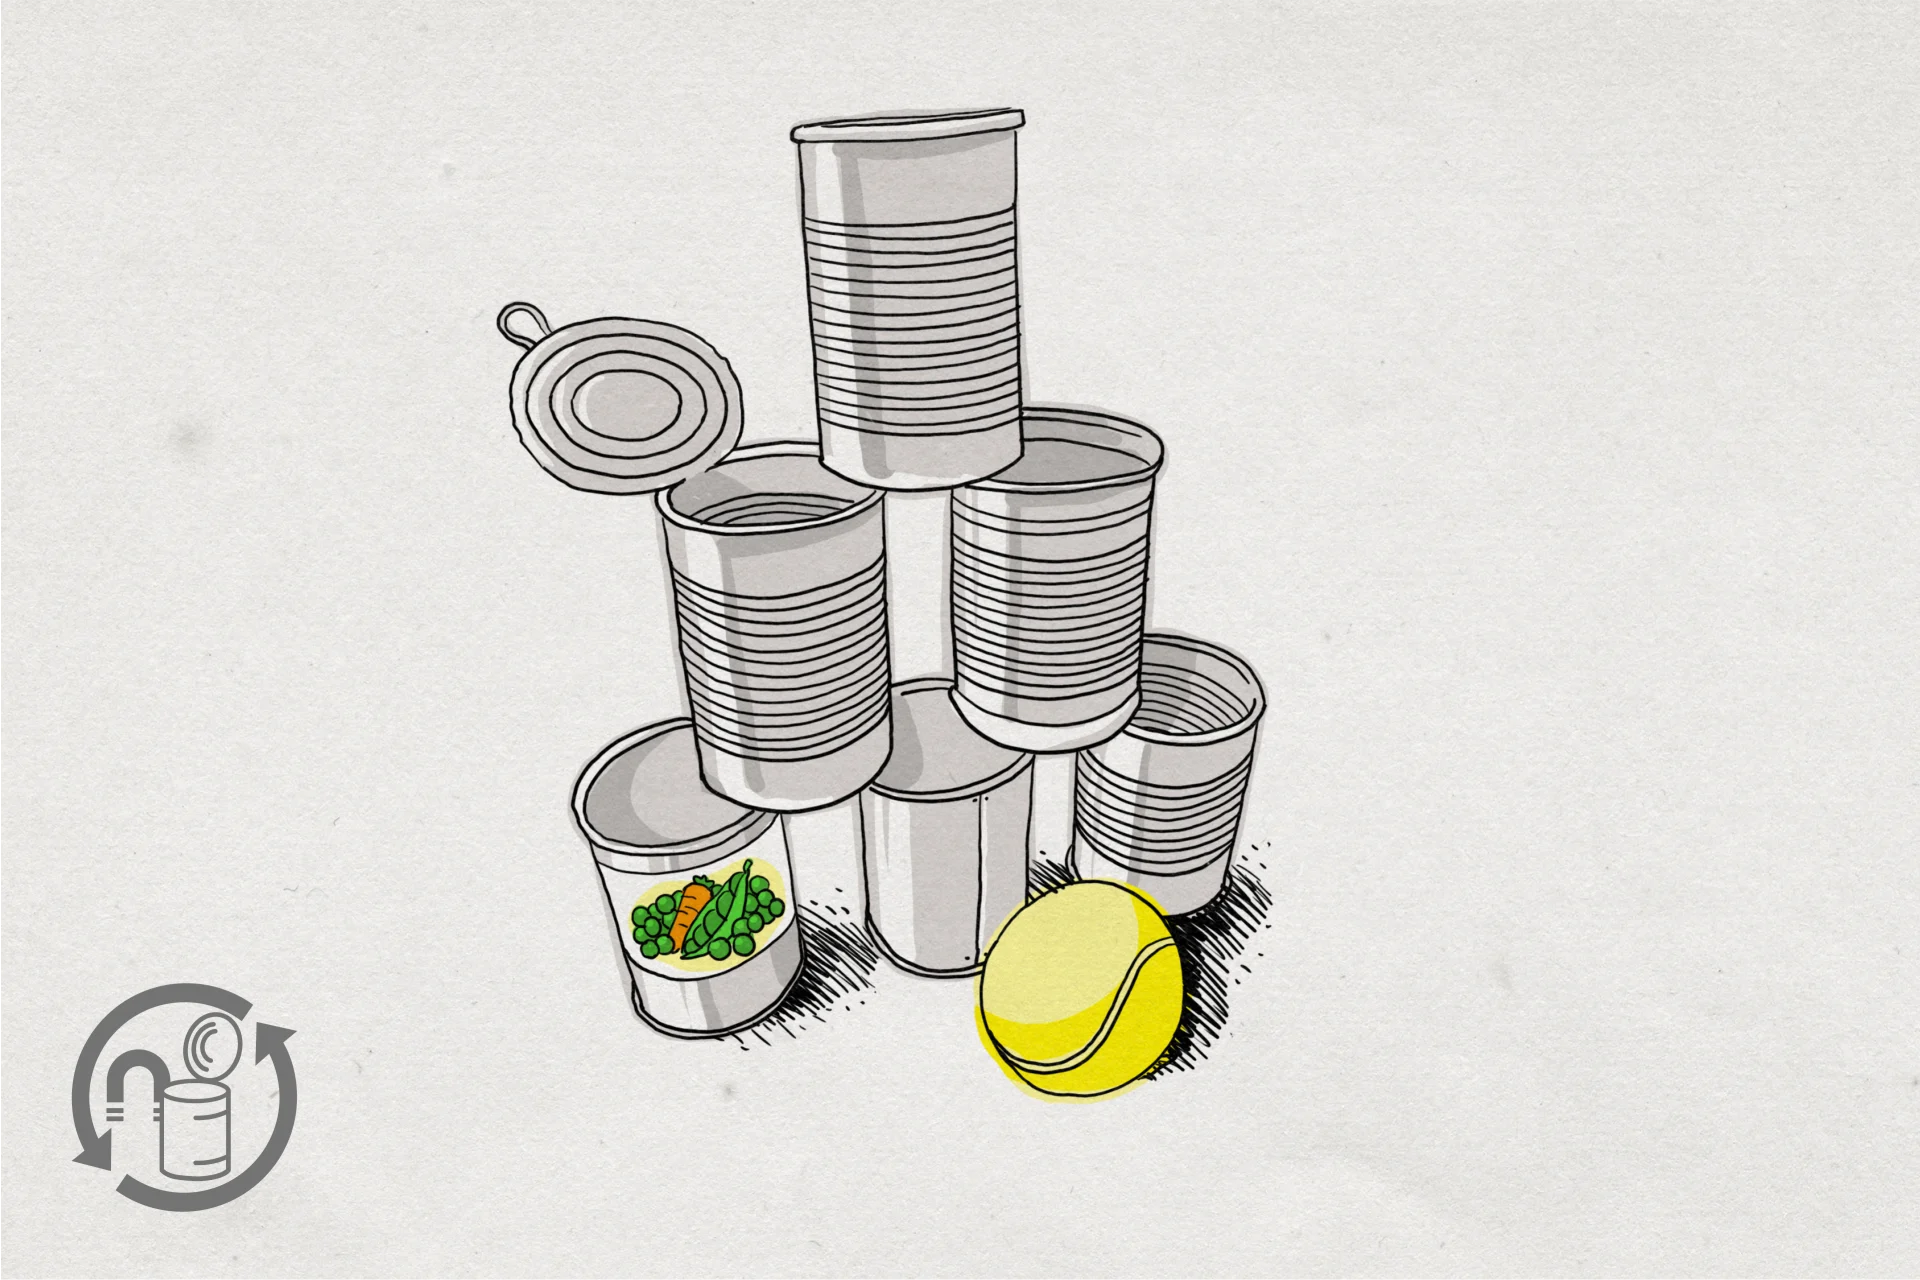 Illustrazione di una pallina da tennis gialla accanto a una pila di lattine di conserva vuote.